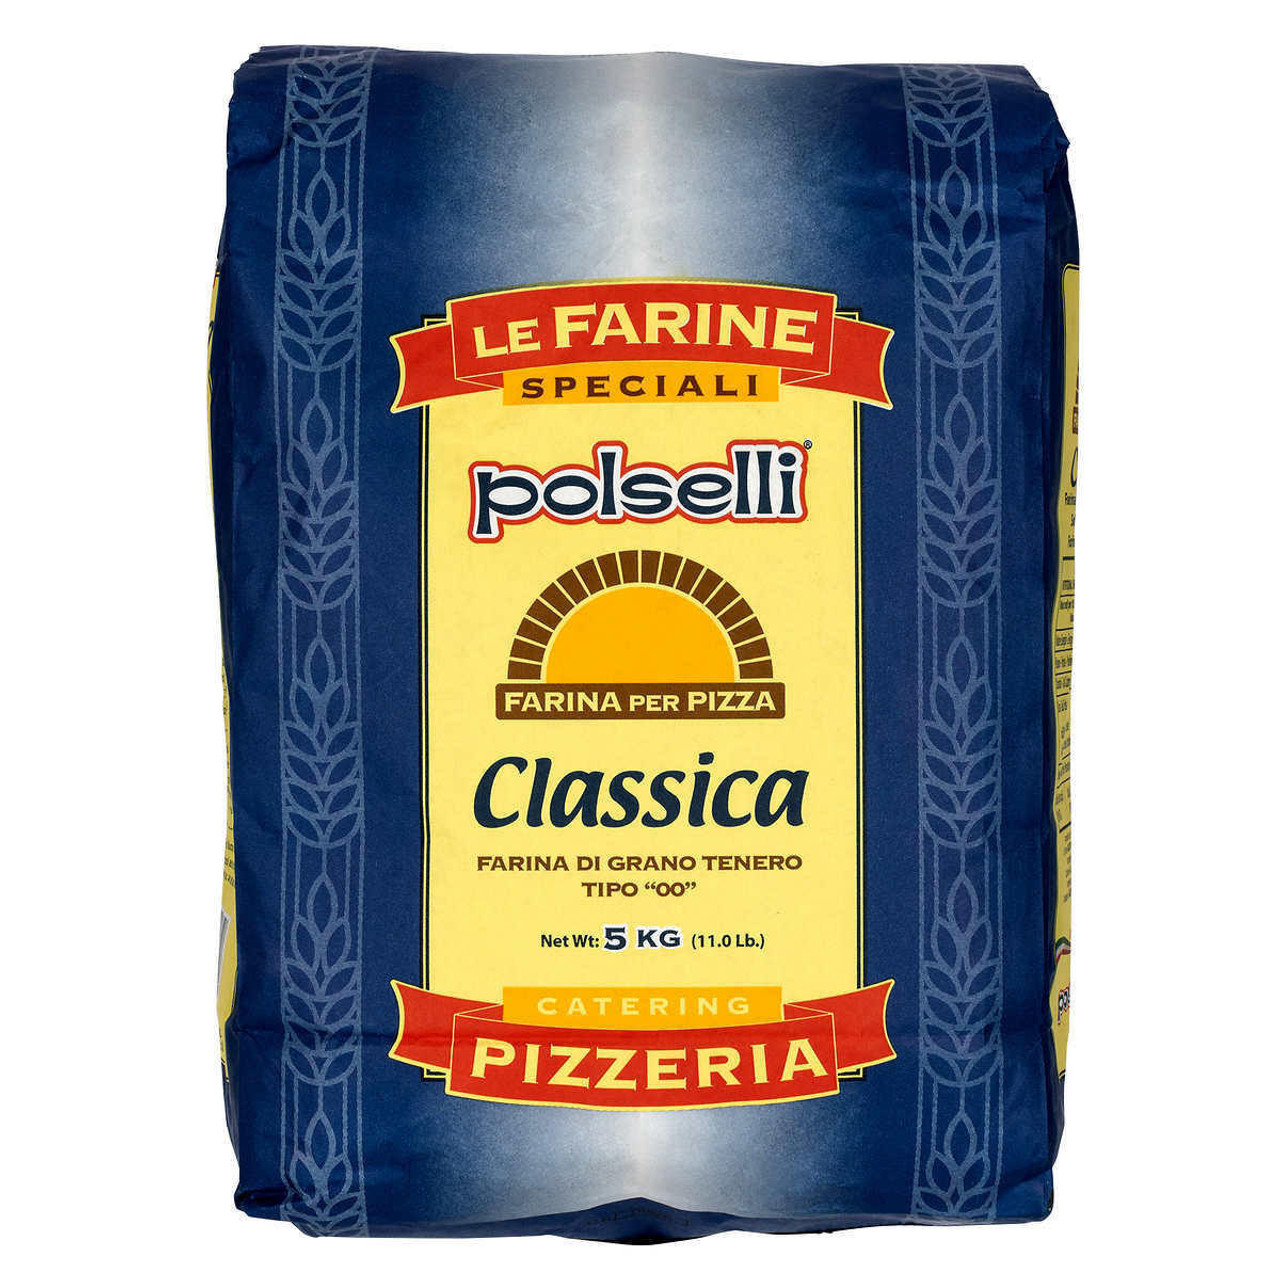 Polselli Classica 00 Flour - 2 × 5 kg | Premium Italian Flour for Authentic Recipes
- Chicken Pieces